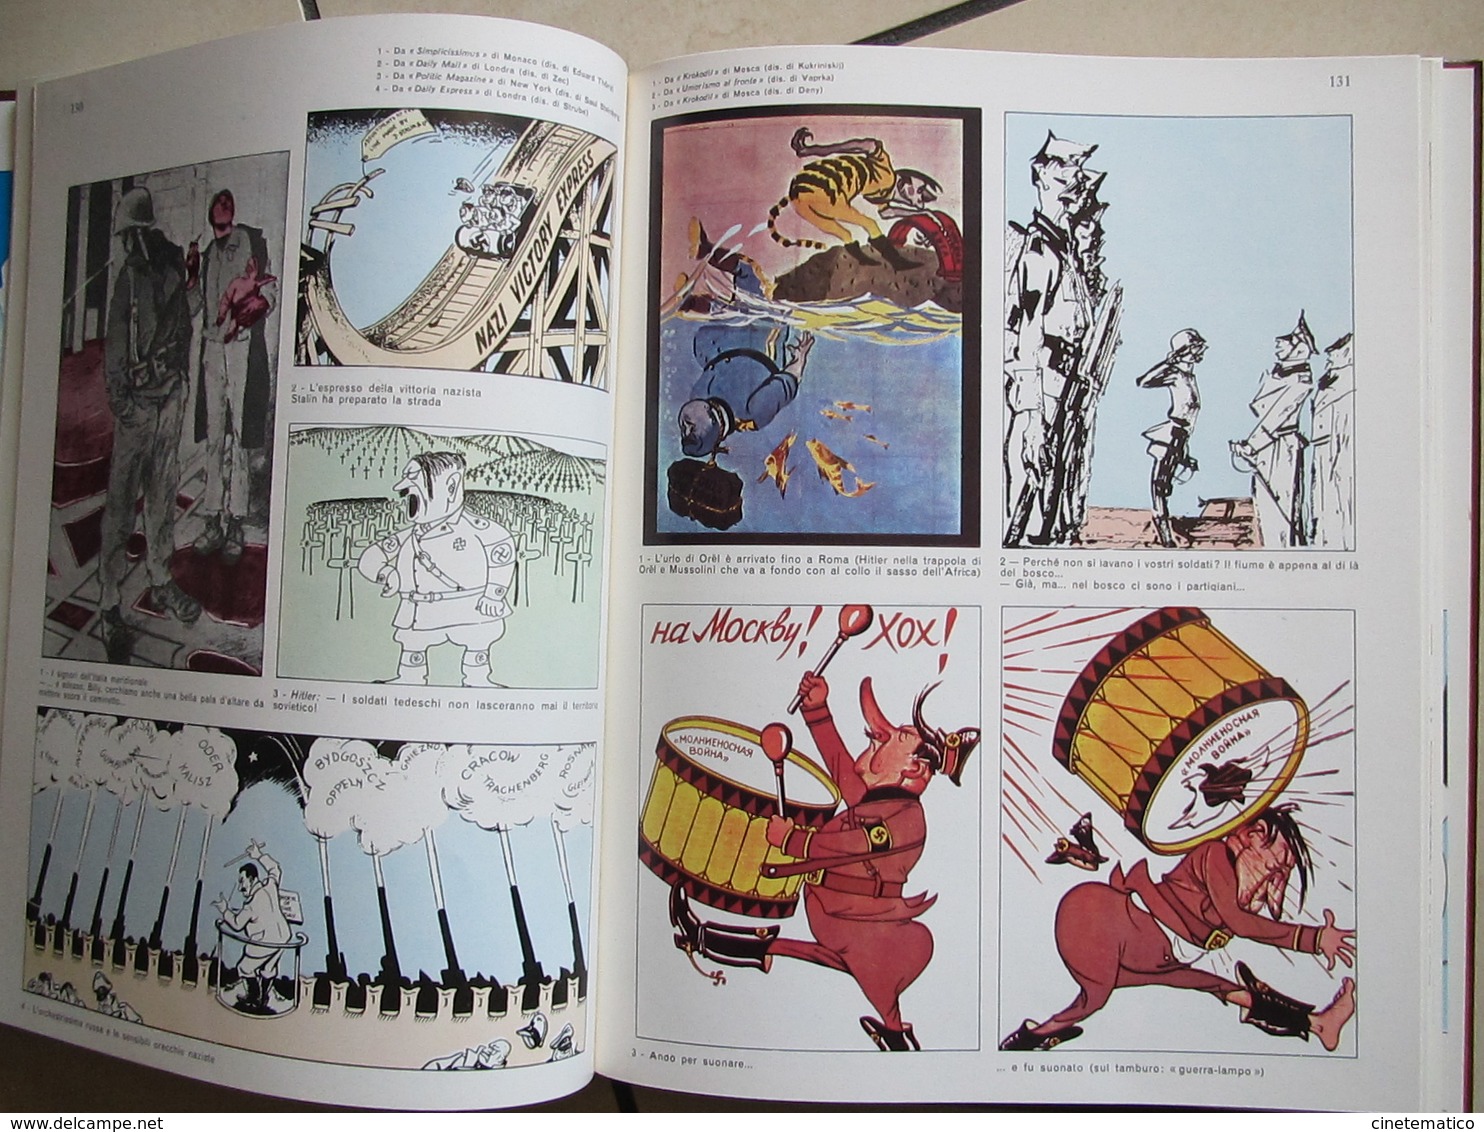 libro/book/livre/buch "La caricatura internazionale durante la seconda guerra mondiale"